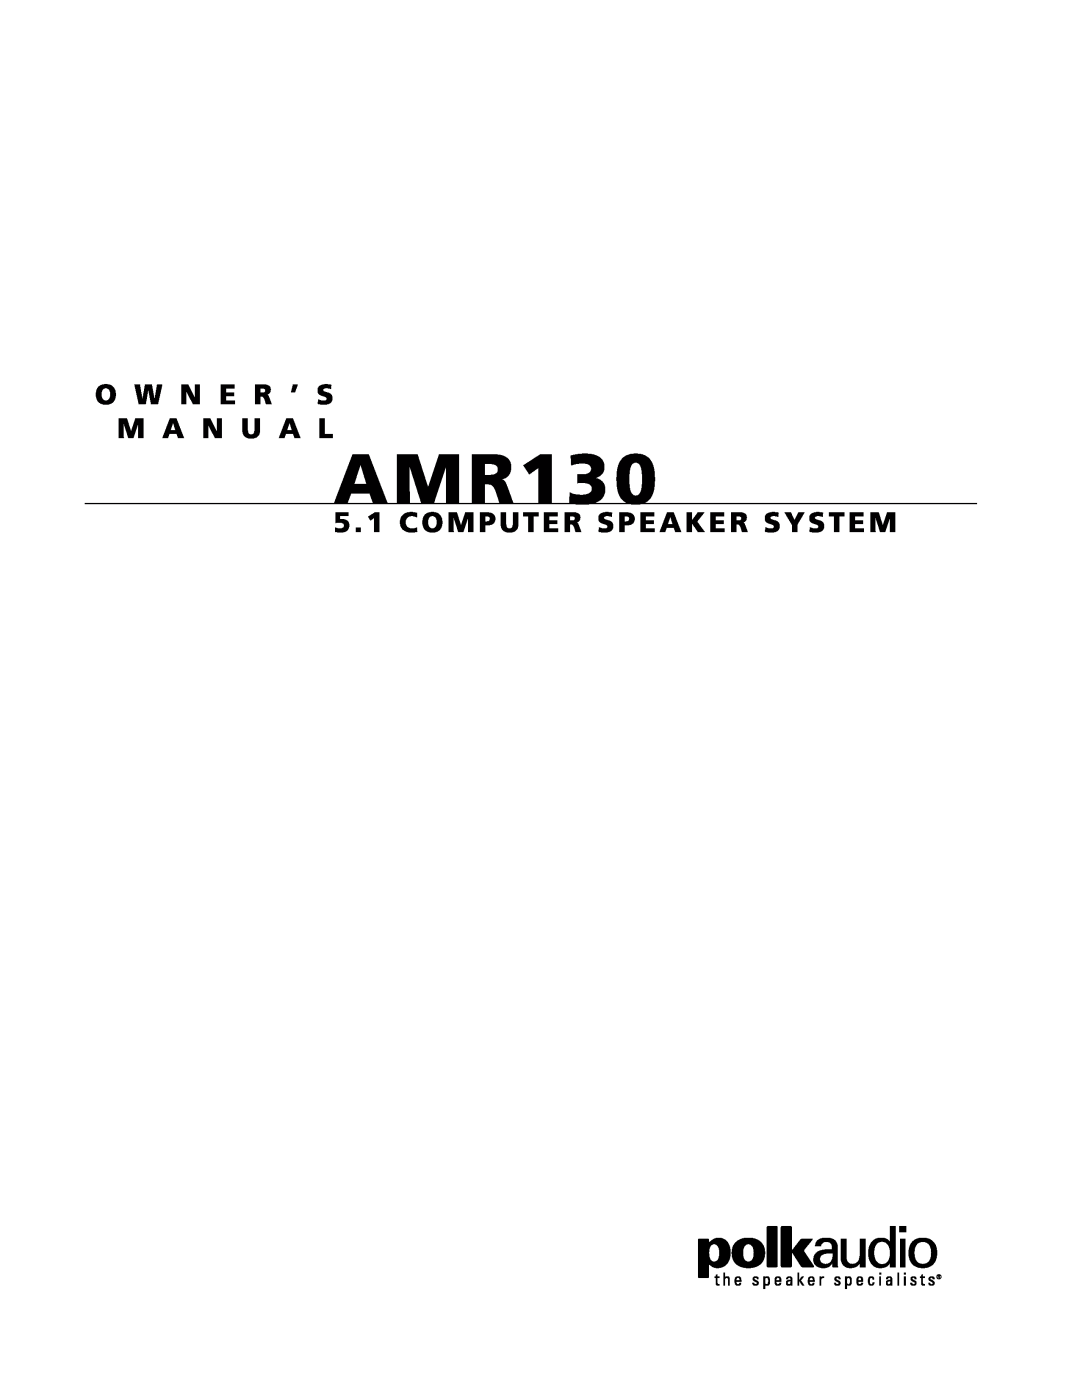 Polk Audio AMR130 owner manual O W N E R ’ S M A N U A L, 5 . 1 COMPUTER SPEAKER SYSTEM 